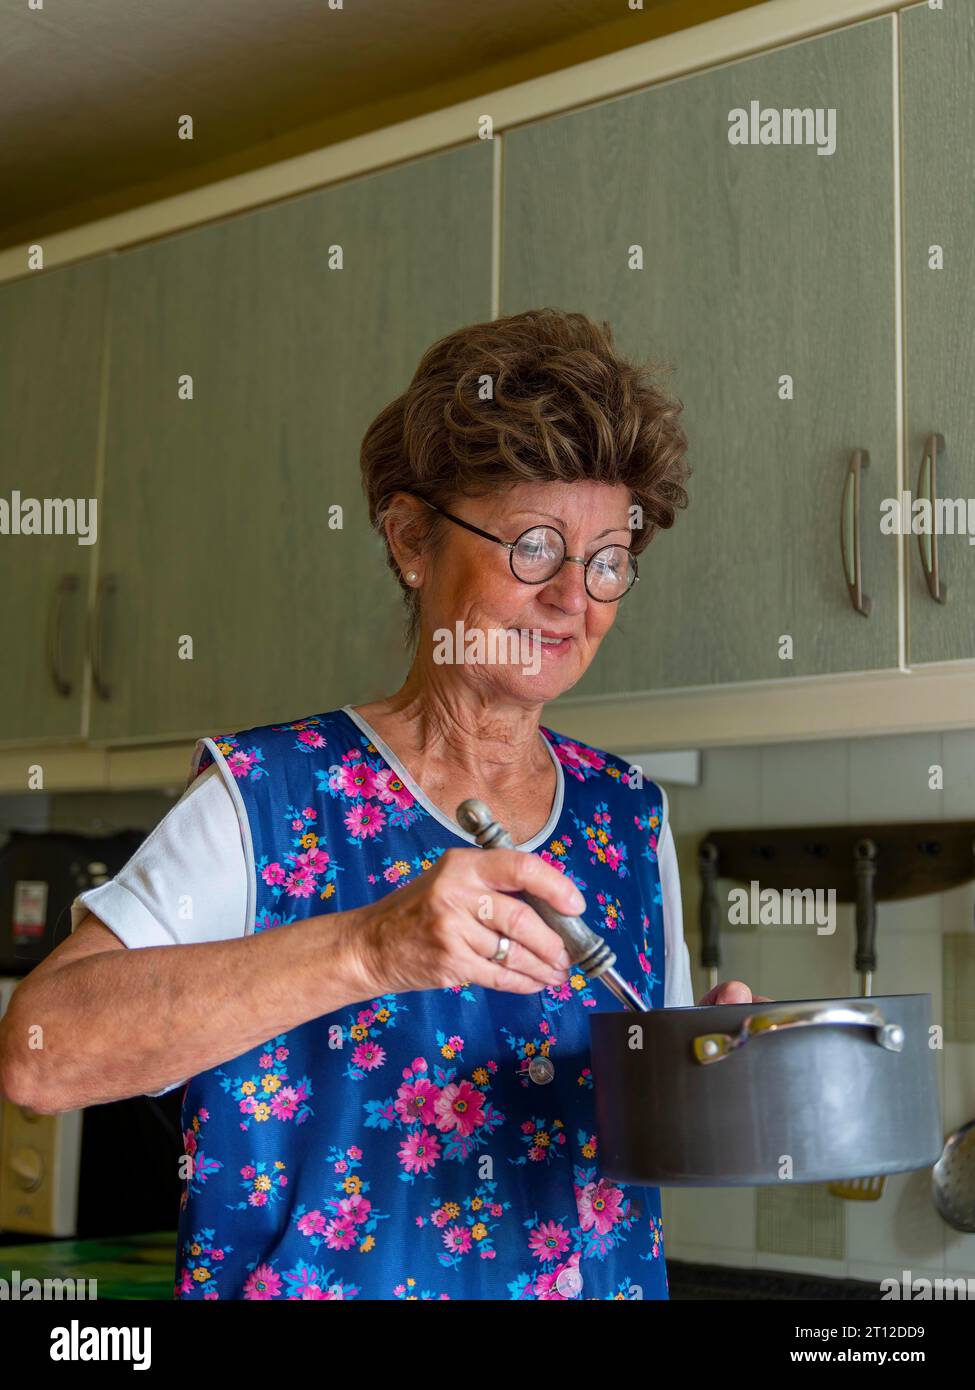 Oma mit alter Kittelschürze, Brille und Perücke in der Küche, hält